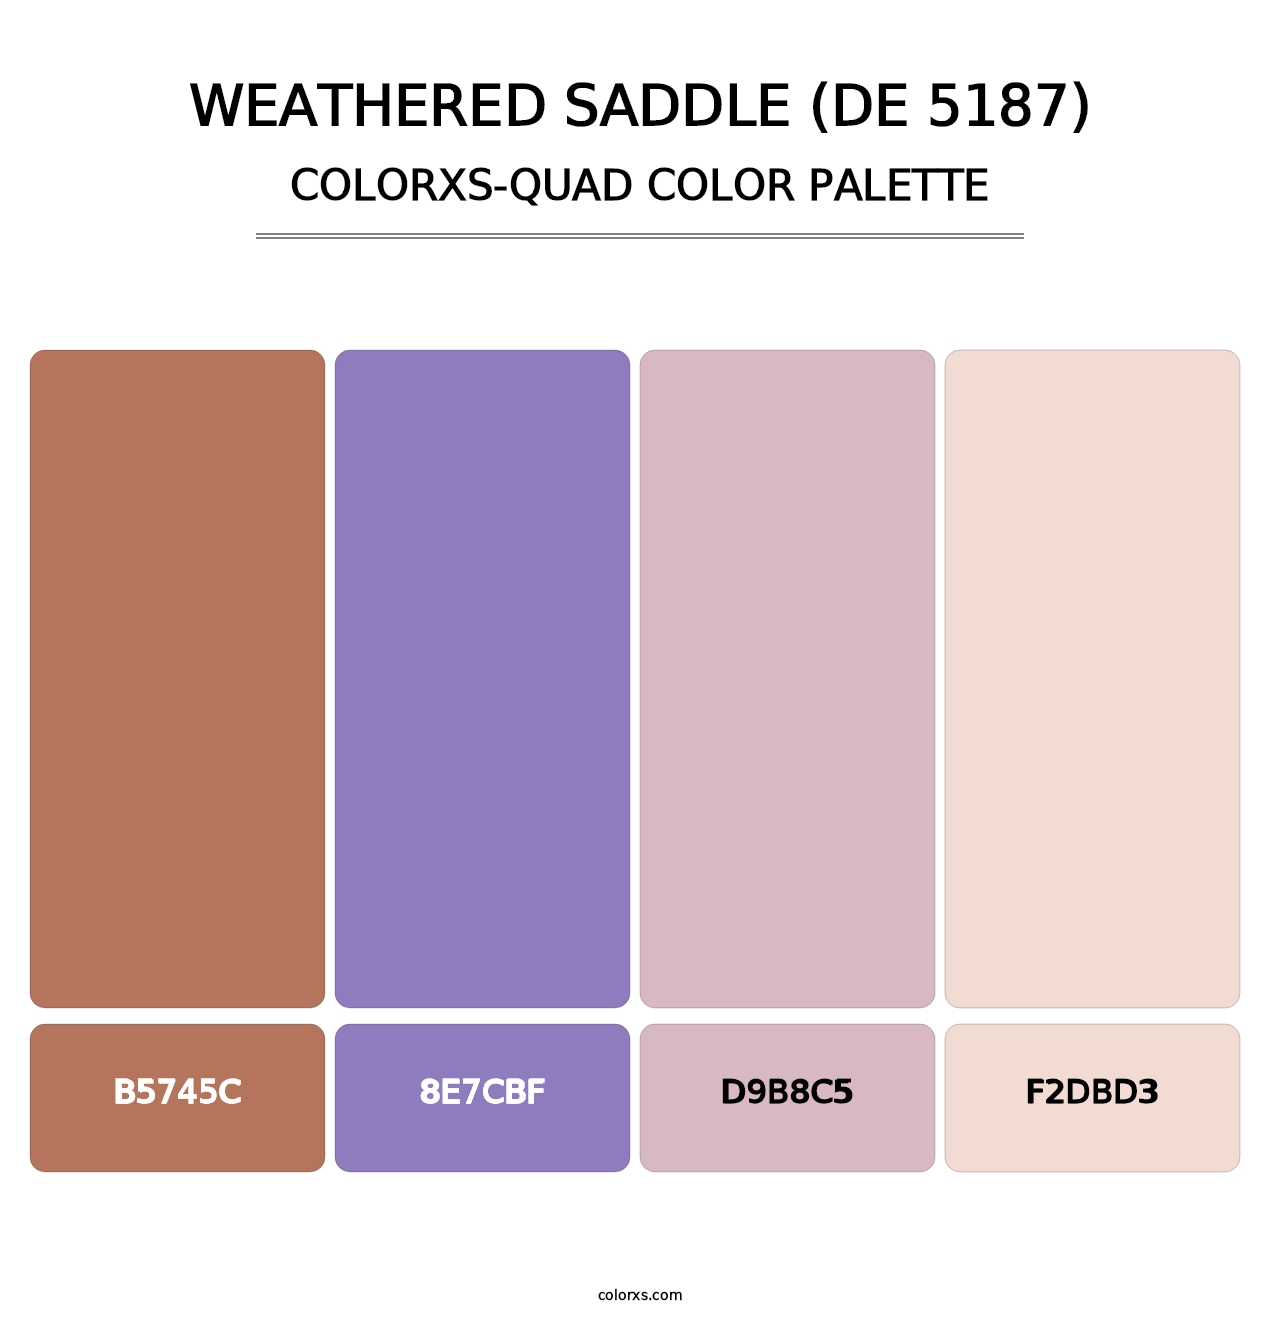 Weathered Saddle (DE 5187) - Colorxs Quad Palette